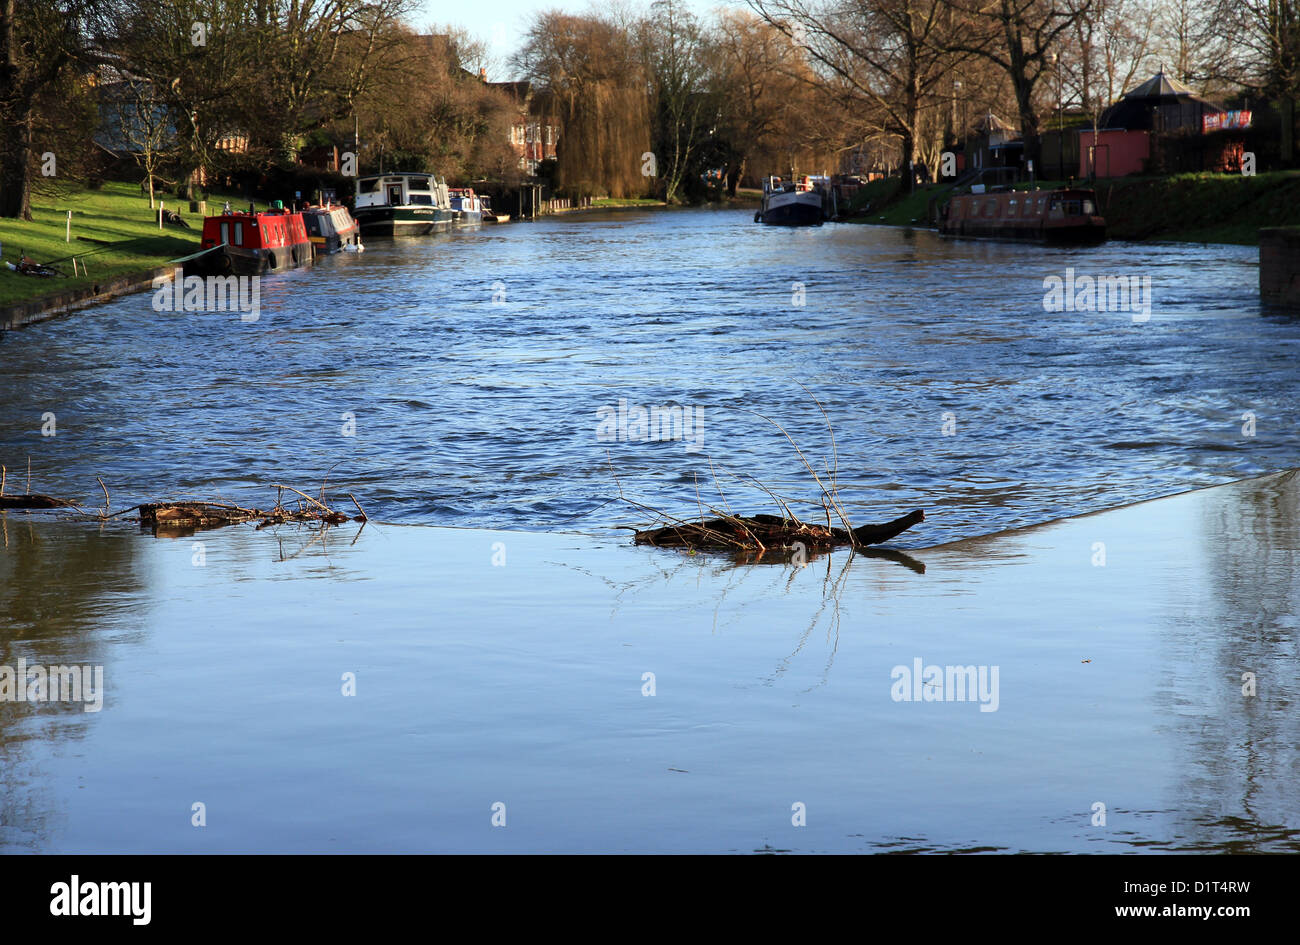 Fluss Cam in Flut an Jesus Green, Cambridge, England, UK. Abfluss- und Wasserstände Gießen über Wehr neben sperren. Stockfoto